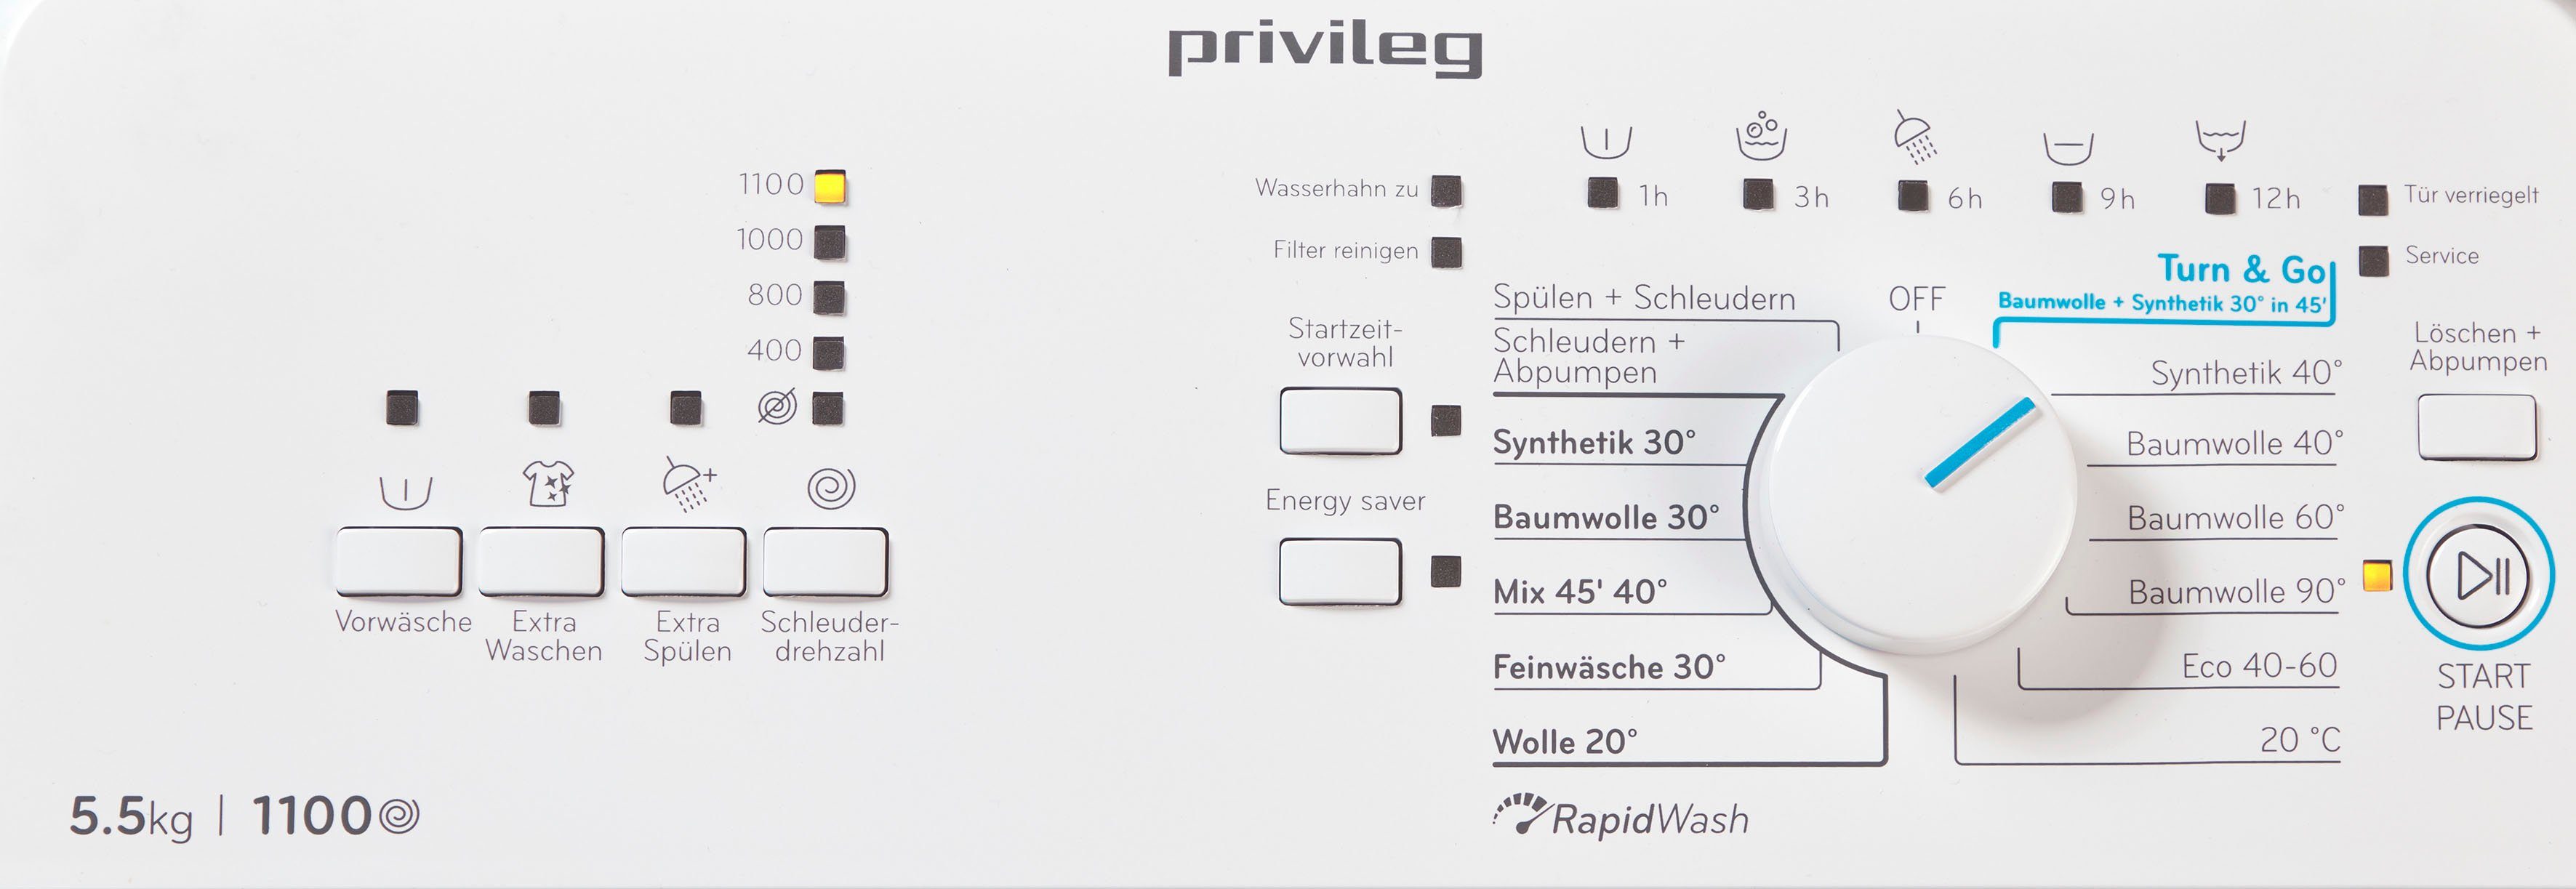 5,5 Privileg Waschmaschine U/min Toplader LD55 DE, PWT kg, 1100